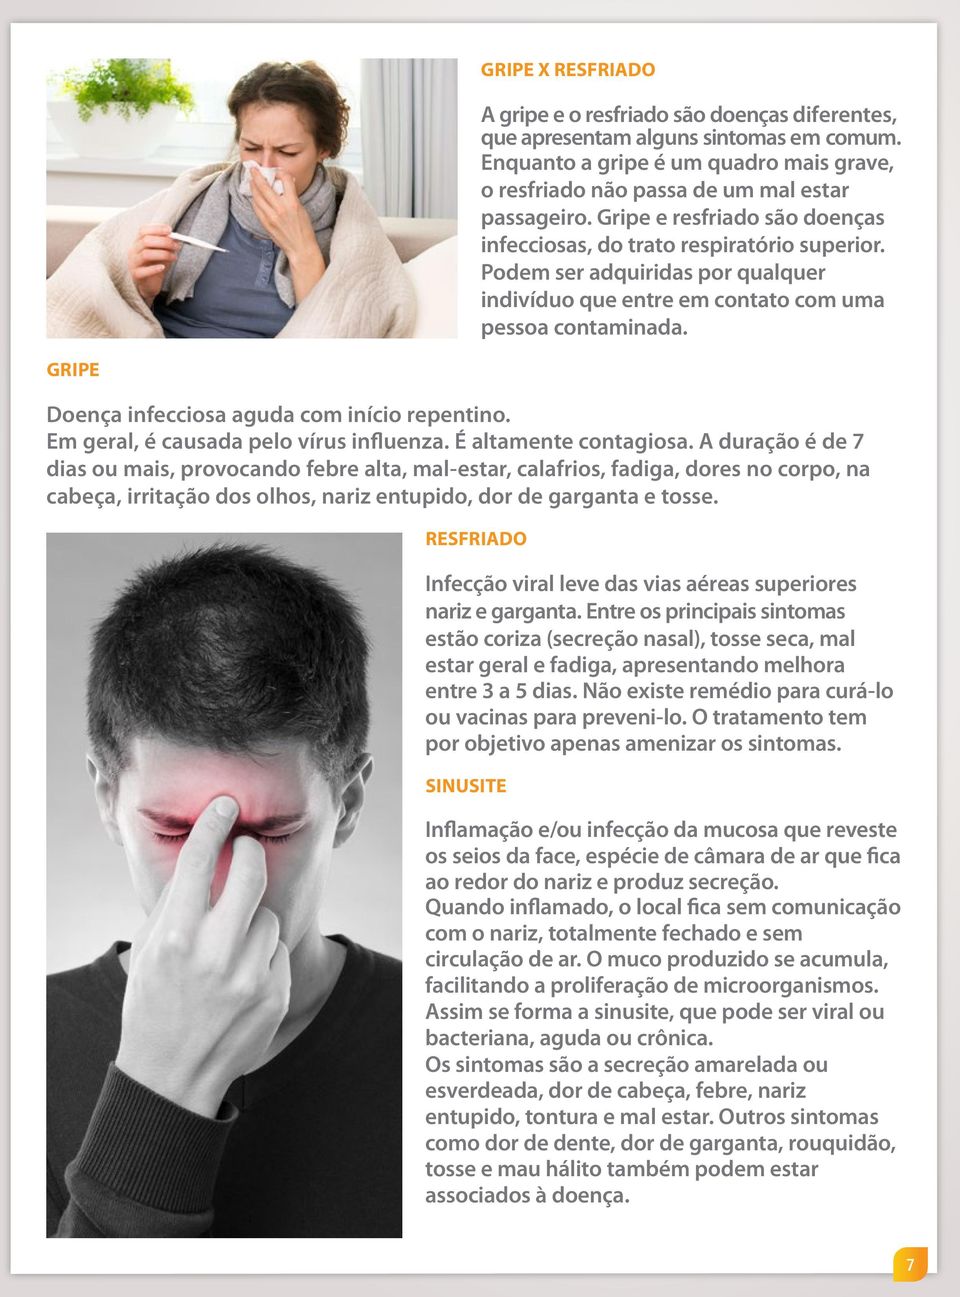 GRIPE Doença infecciosa aguda com início repentino. Em geral, é causada pelo vírus influenza. É altamente contagiosa.